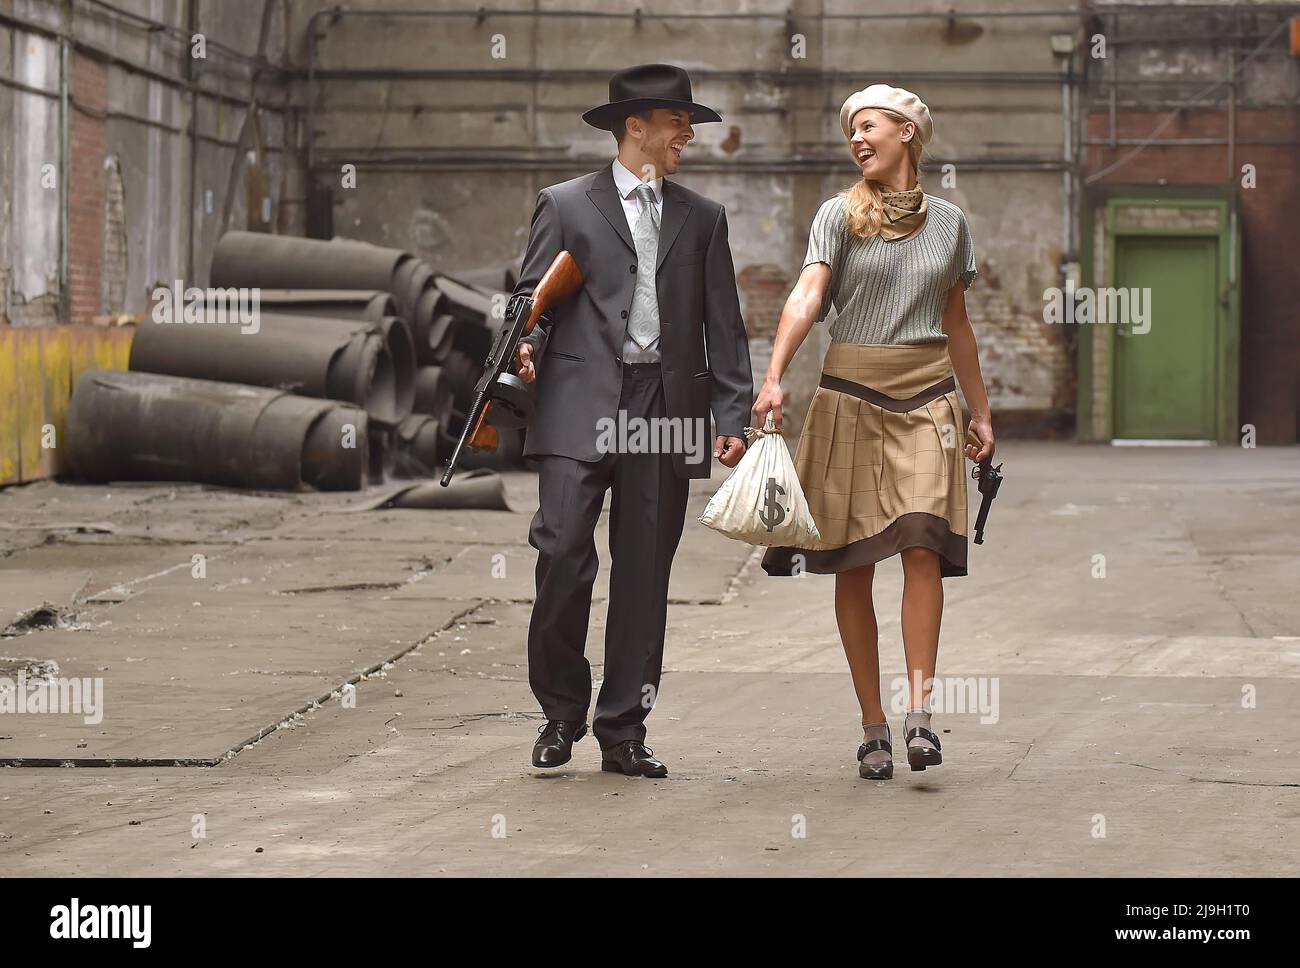 Ein junges Paar zieht sich in Kleidung im Stil von 1930 an. Sie tragen jeweils eine Waffe, während sie die Rolle des berühmten Gangsterduos Bonnie und Clyde übernehmen. Stockfoto